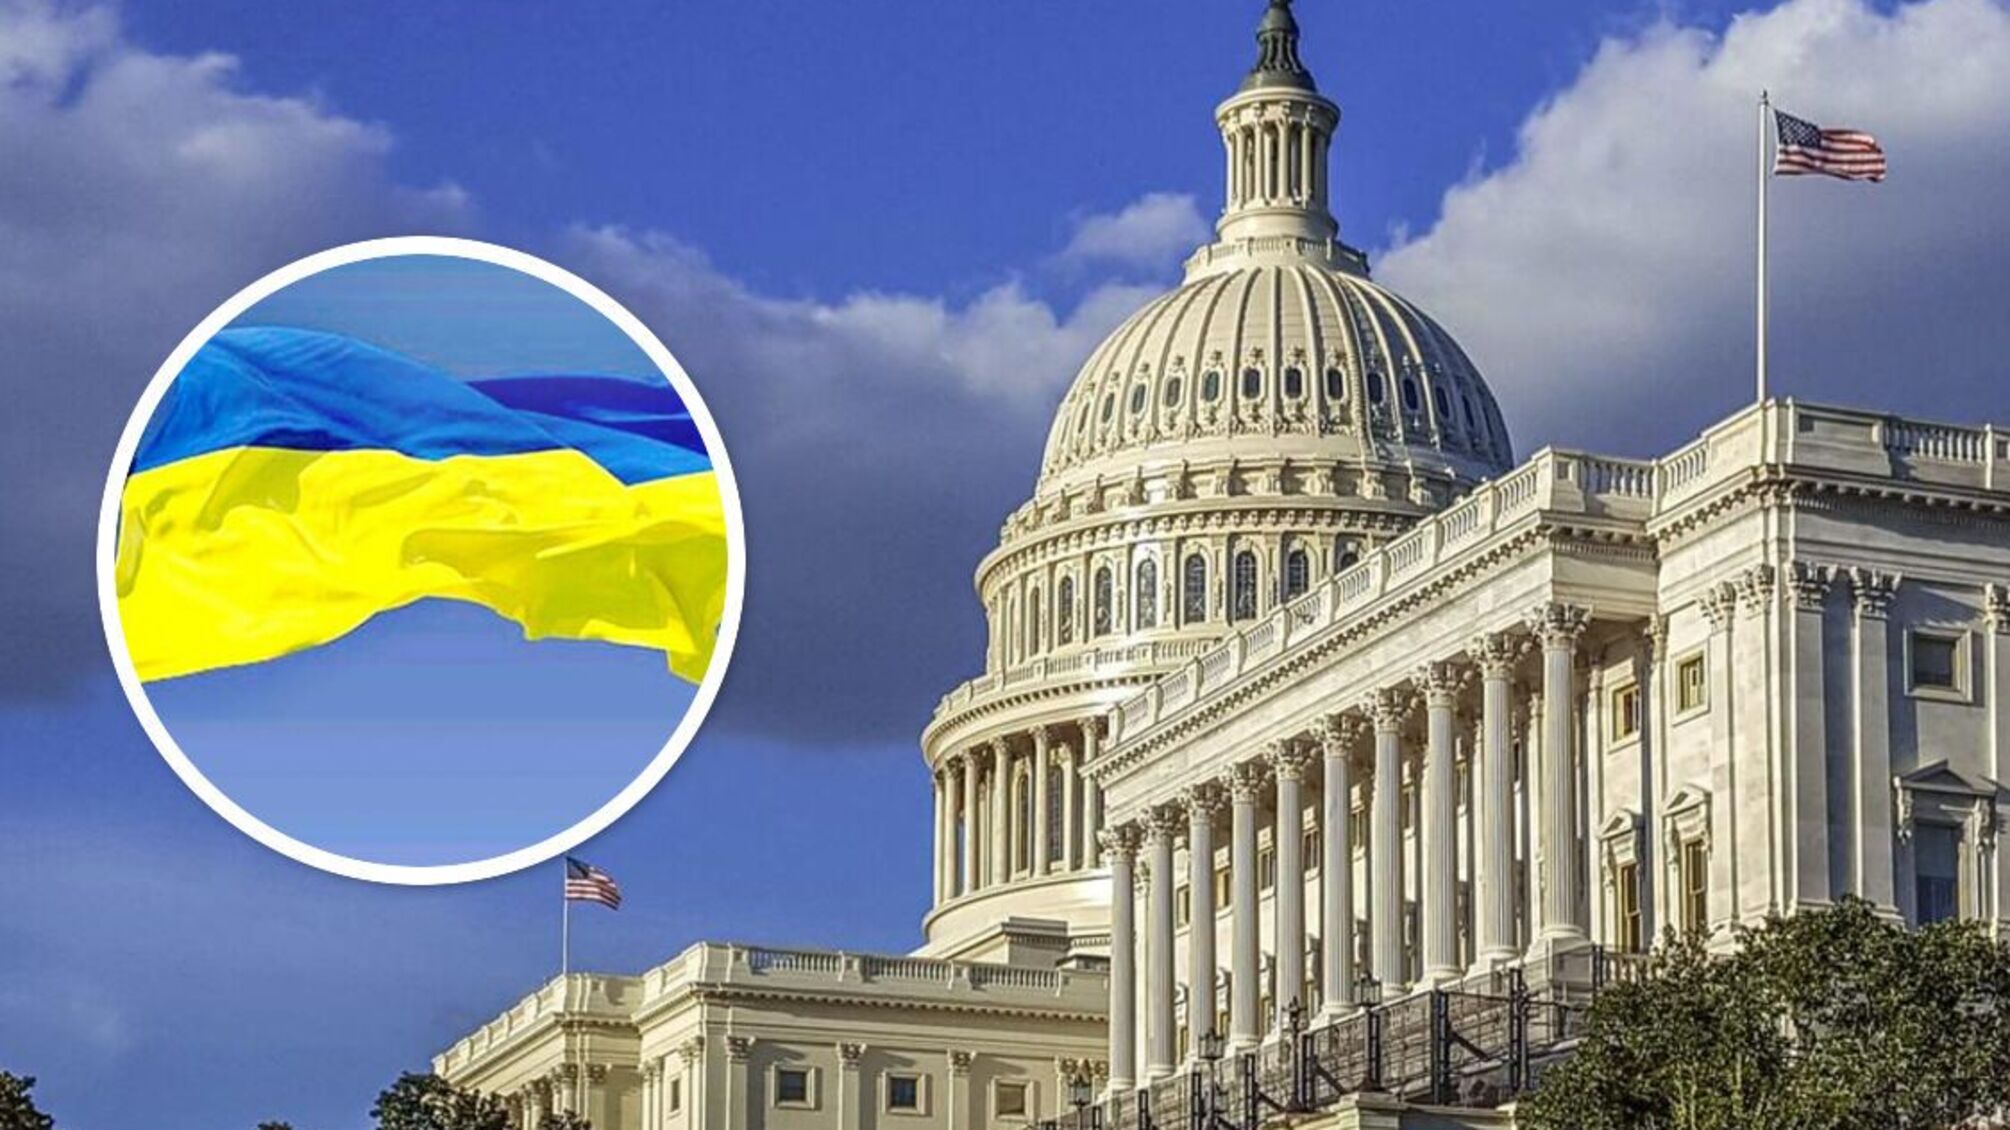 Сенат США затвердив екстренну допомогу Україні розміром 12,4 млрд дол.: деталі розподілу коштів